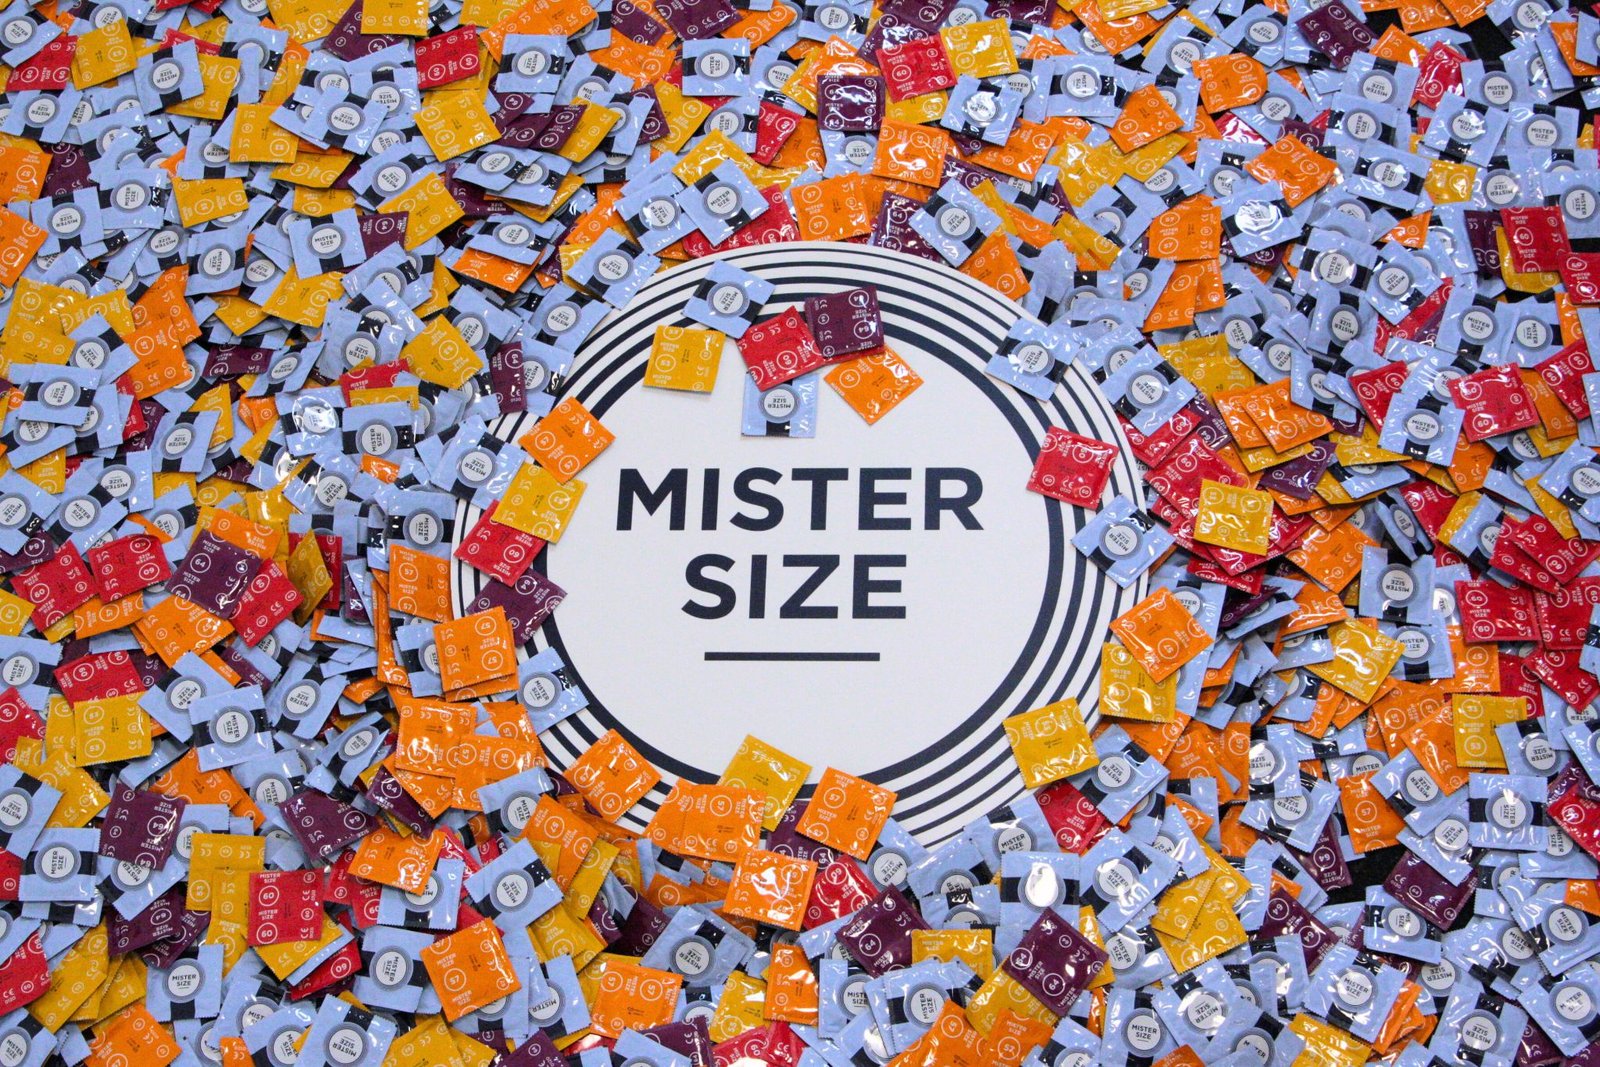 Ulike kondomer fra Mister Size med forskjellige nominelle bredder